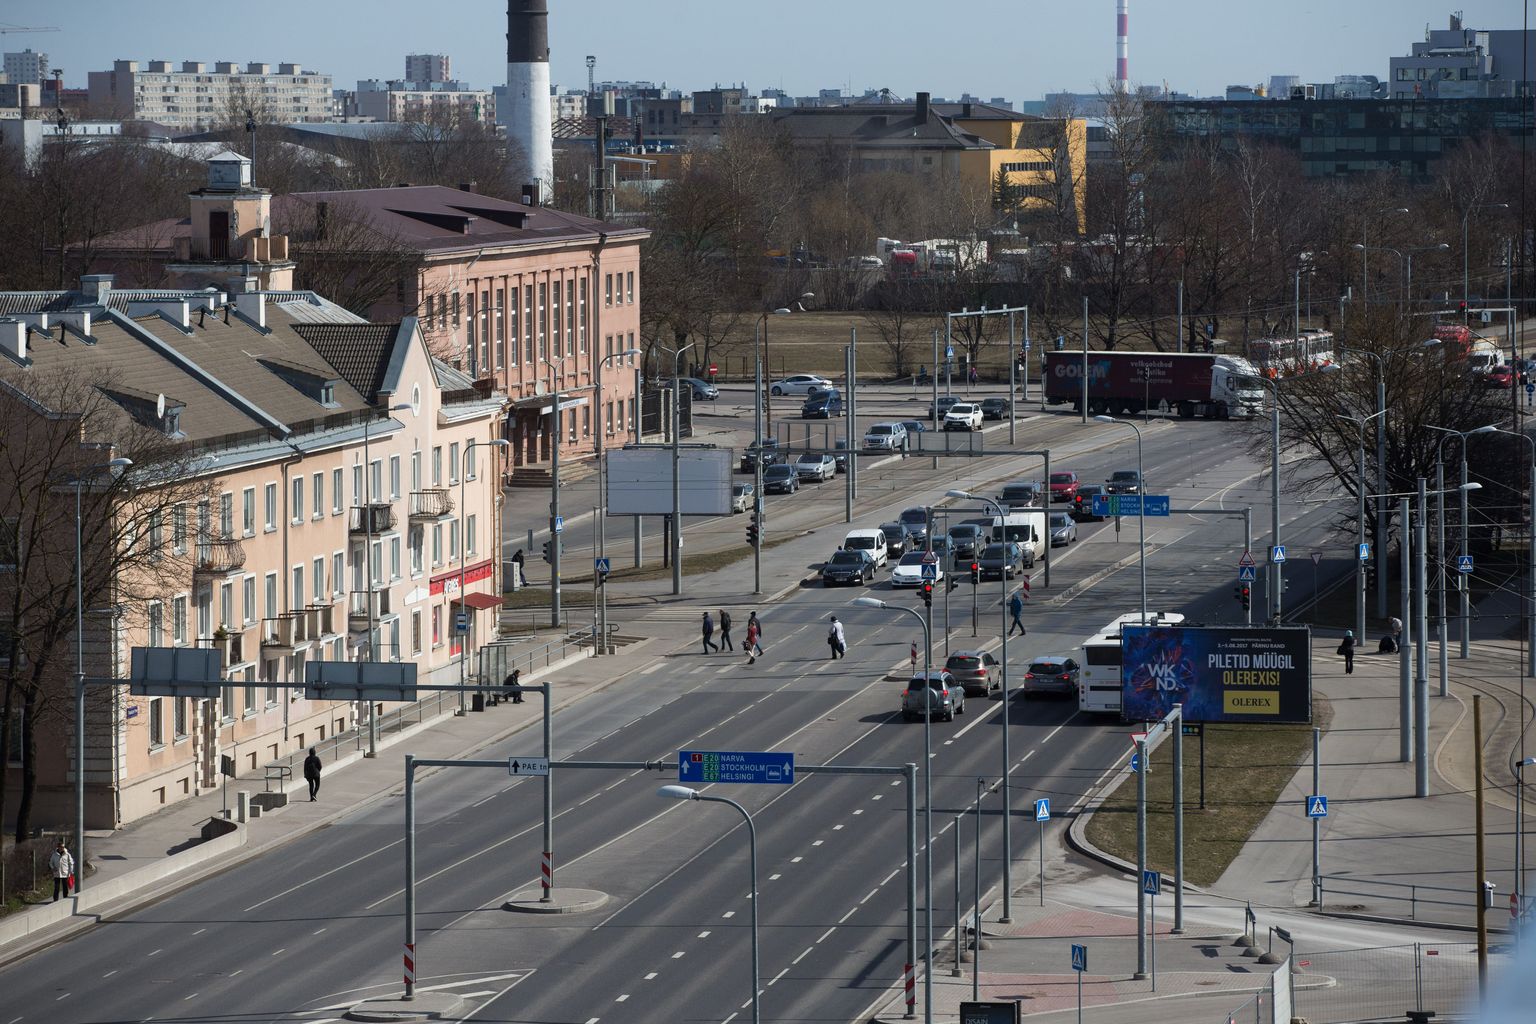 Pärast Majaka risti saab Tallinnas heas korras Peterburi tee otsa. Sealt edasi kuni linna piirini on mitu kilomeetrit erakordselt halvas seisukorras teed.